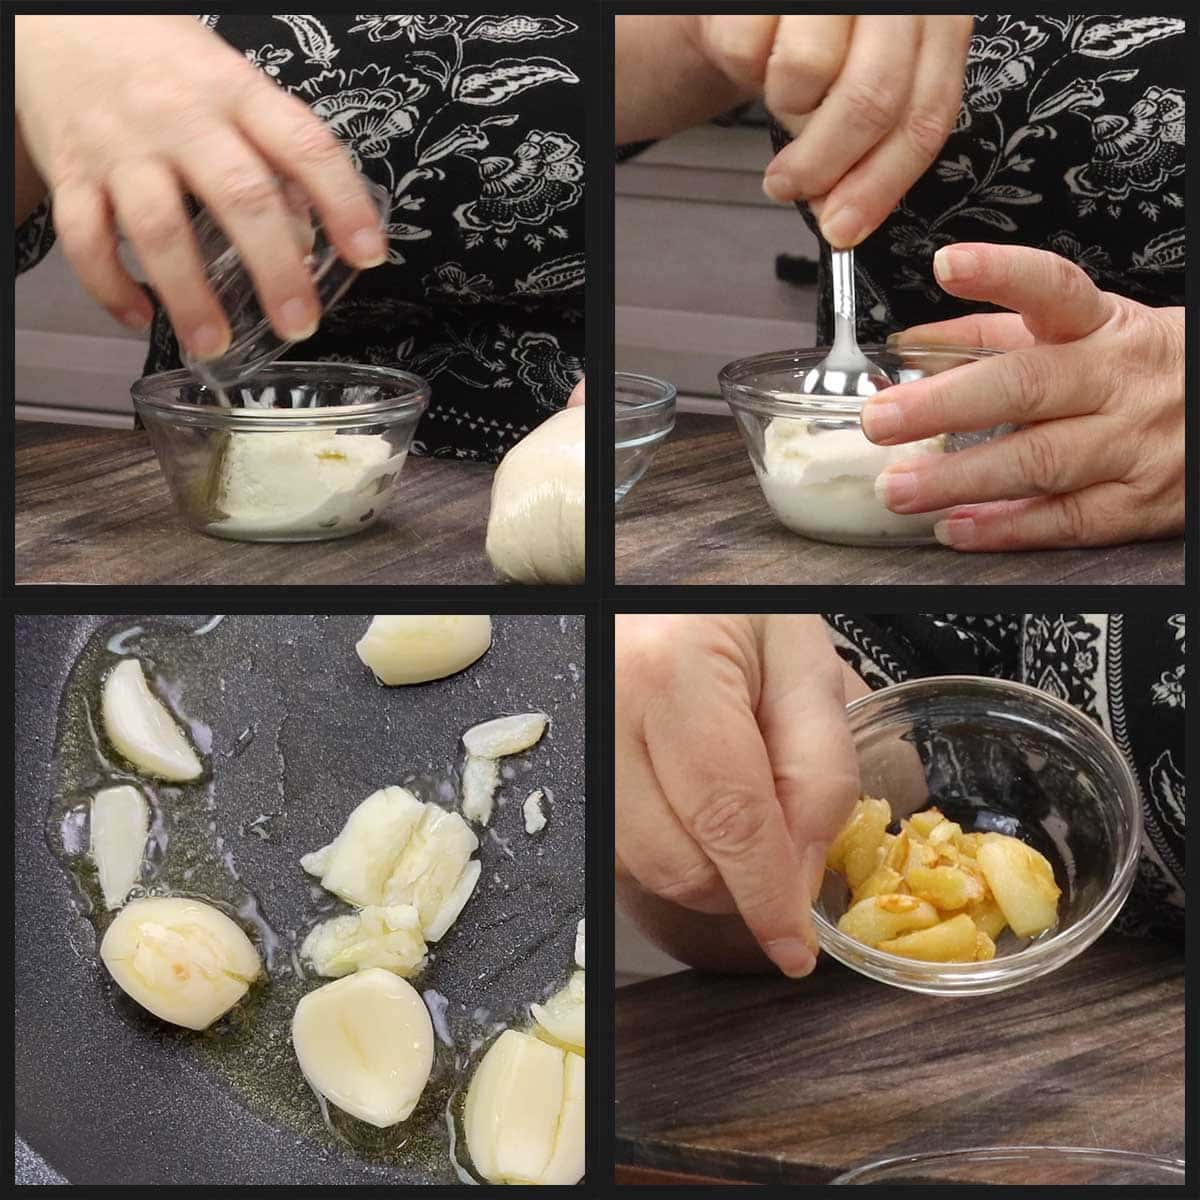 seasoning ricotta and sauteing garlic for calzones.